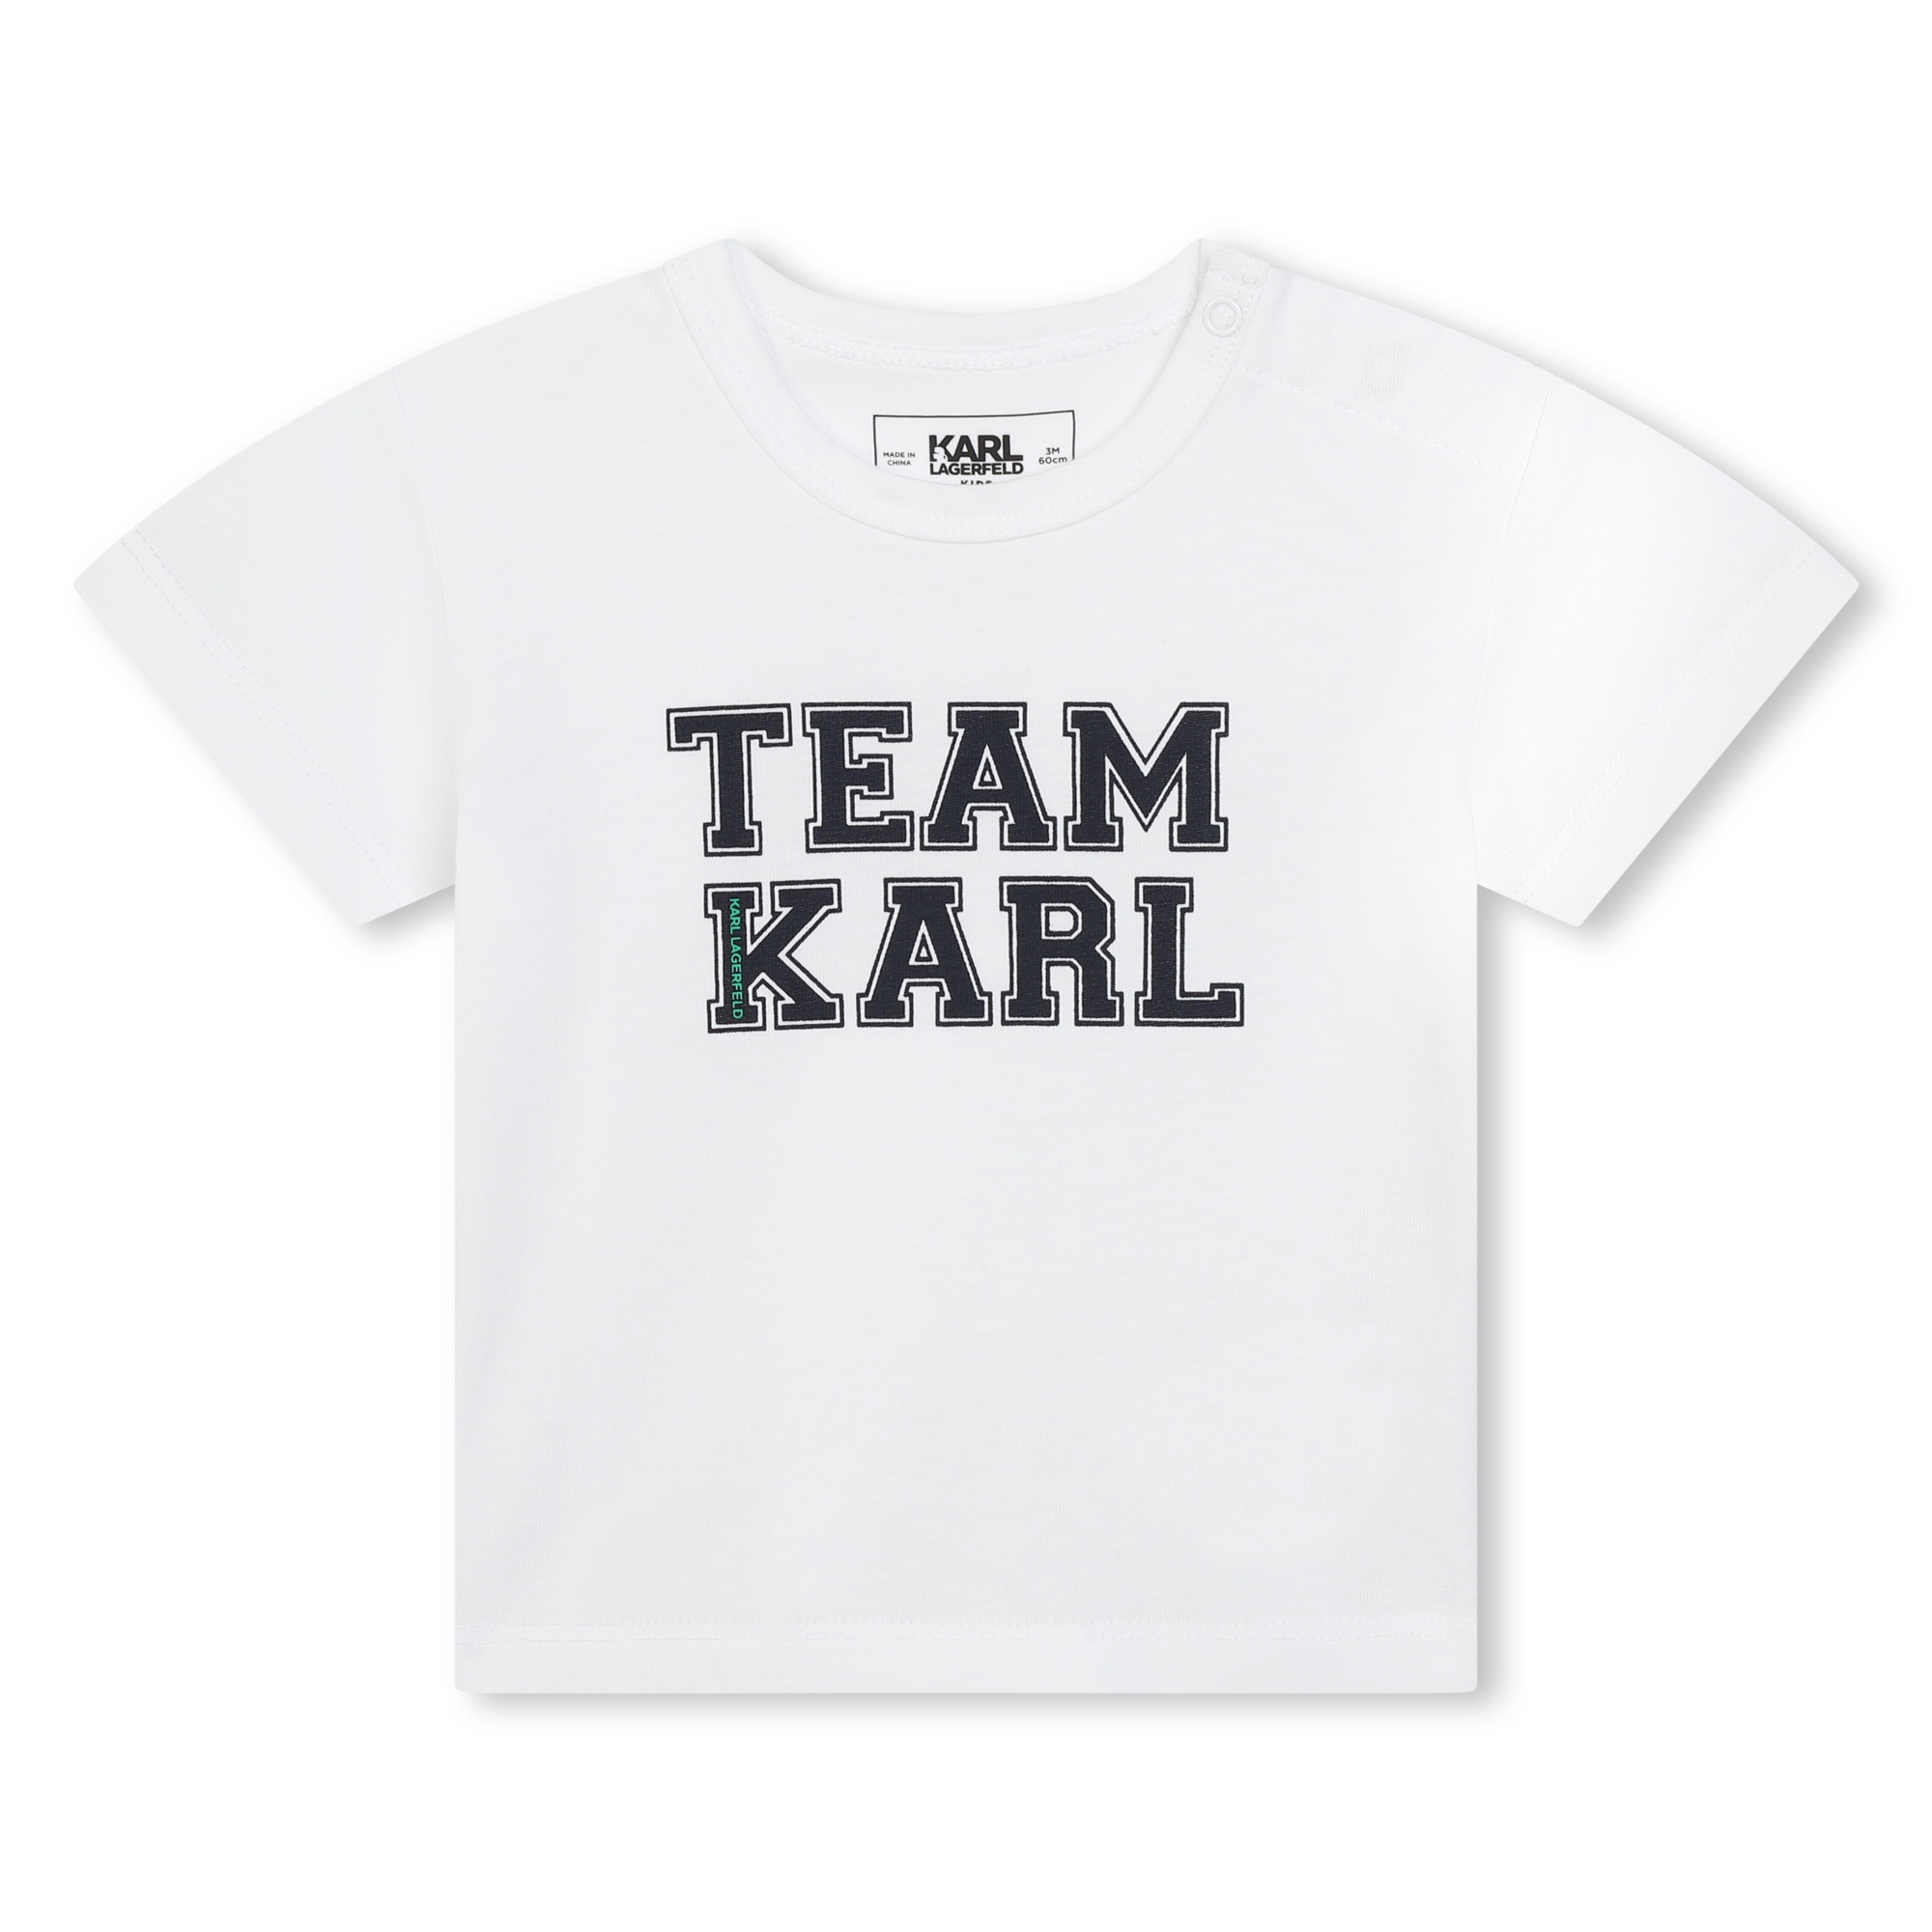 Bañador y camiseta KARL LARGERFELD KIDS para NIÑO